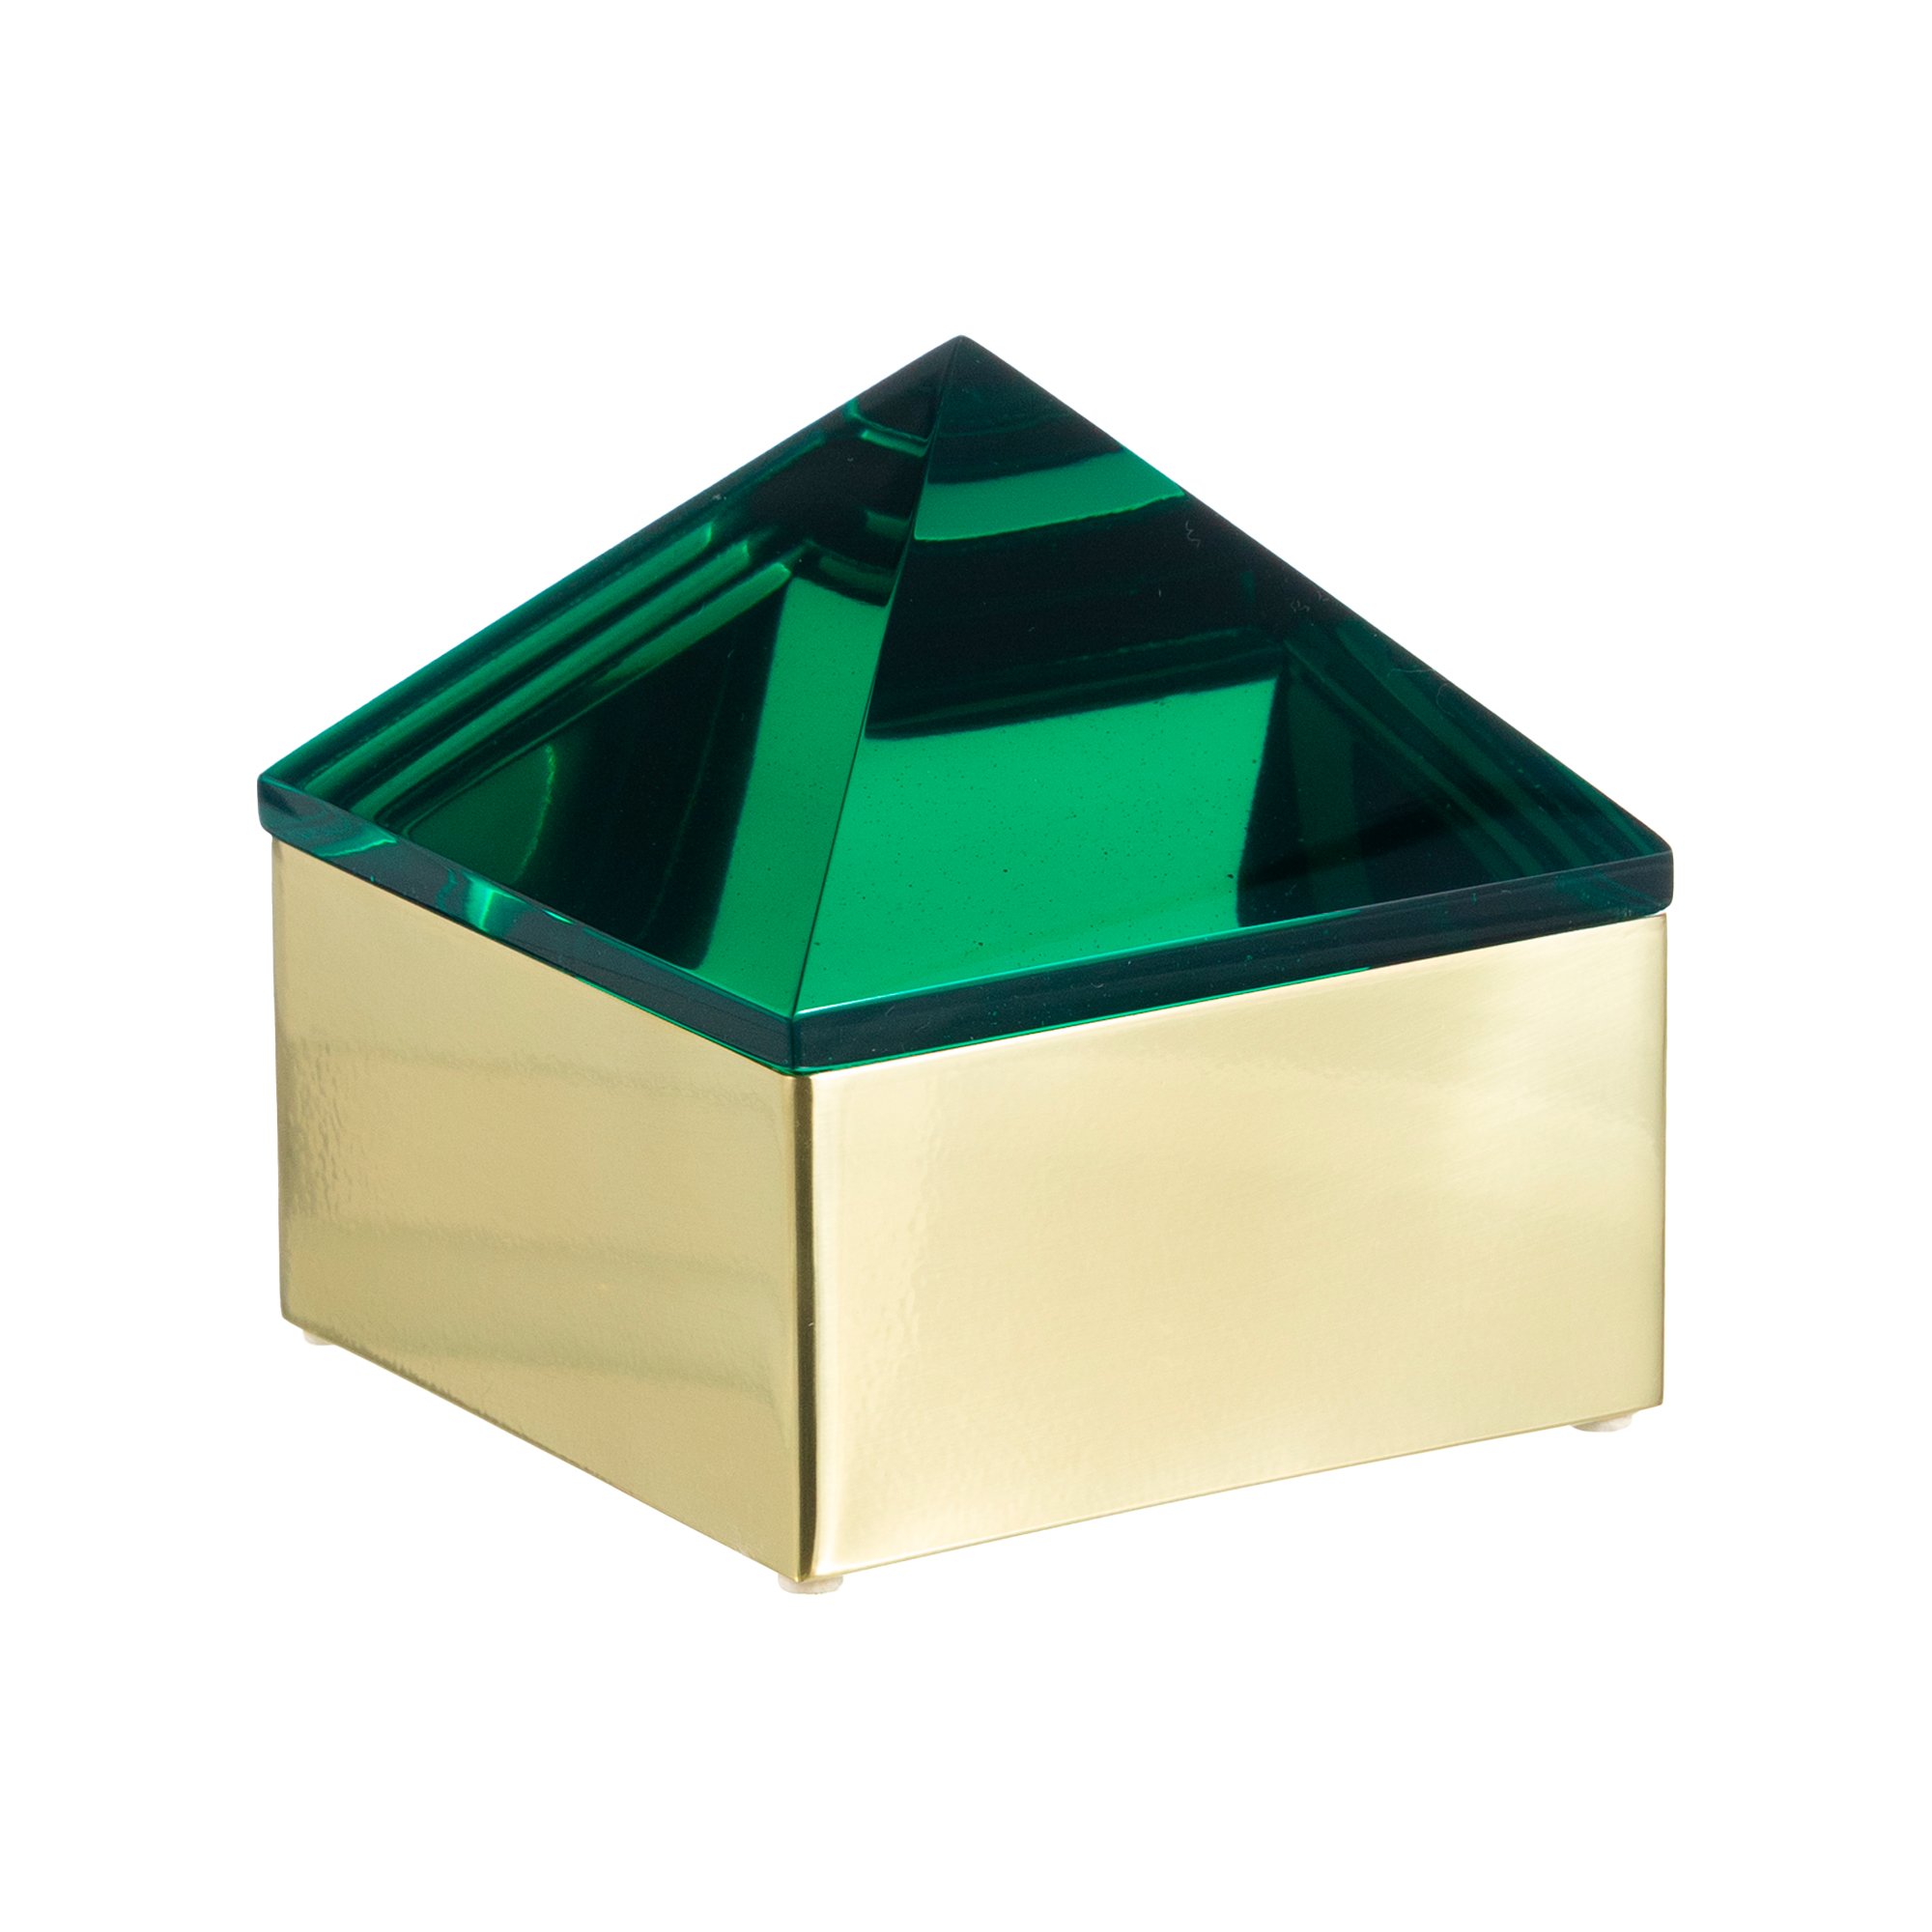 05 caixa decorativa metal dourado tampa piramide resina azul escuro